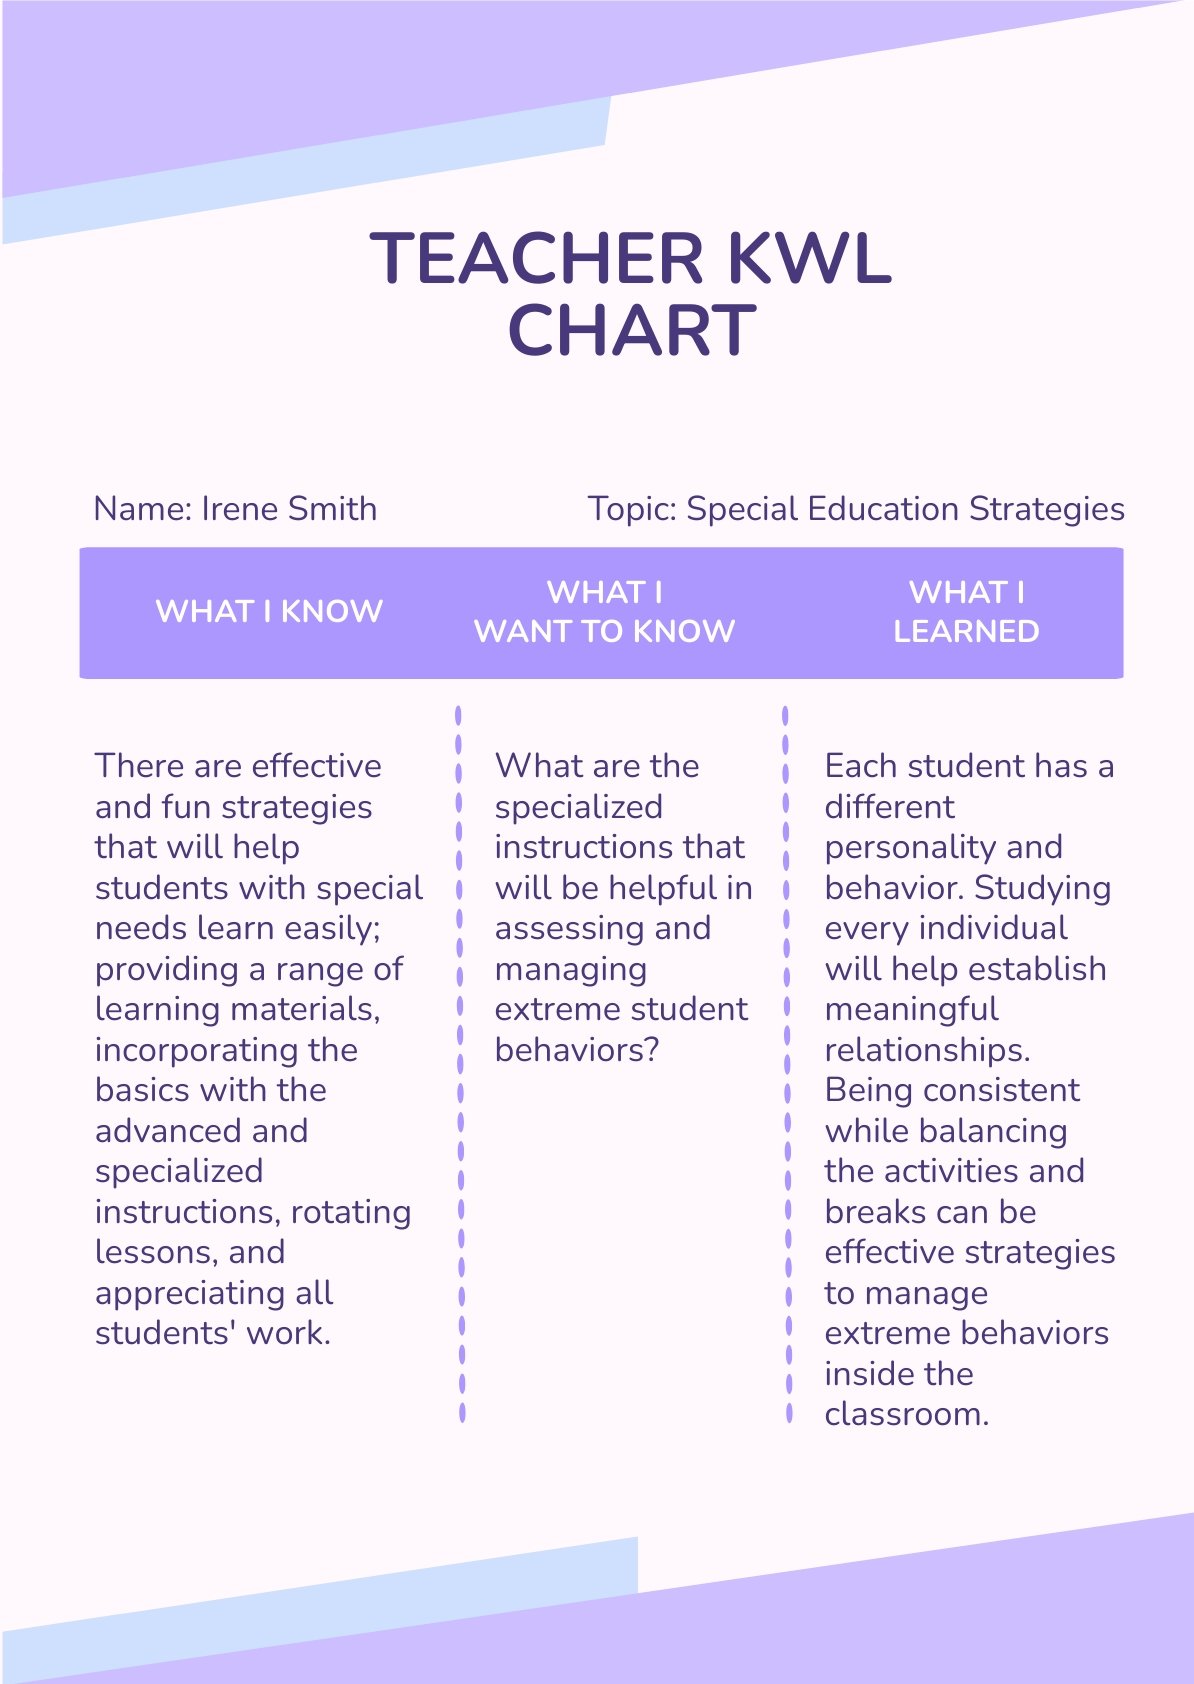 Teacher KWL Chart Template